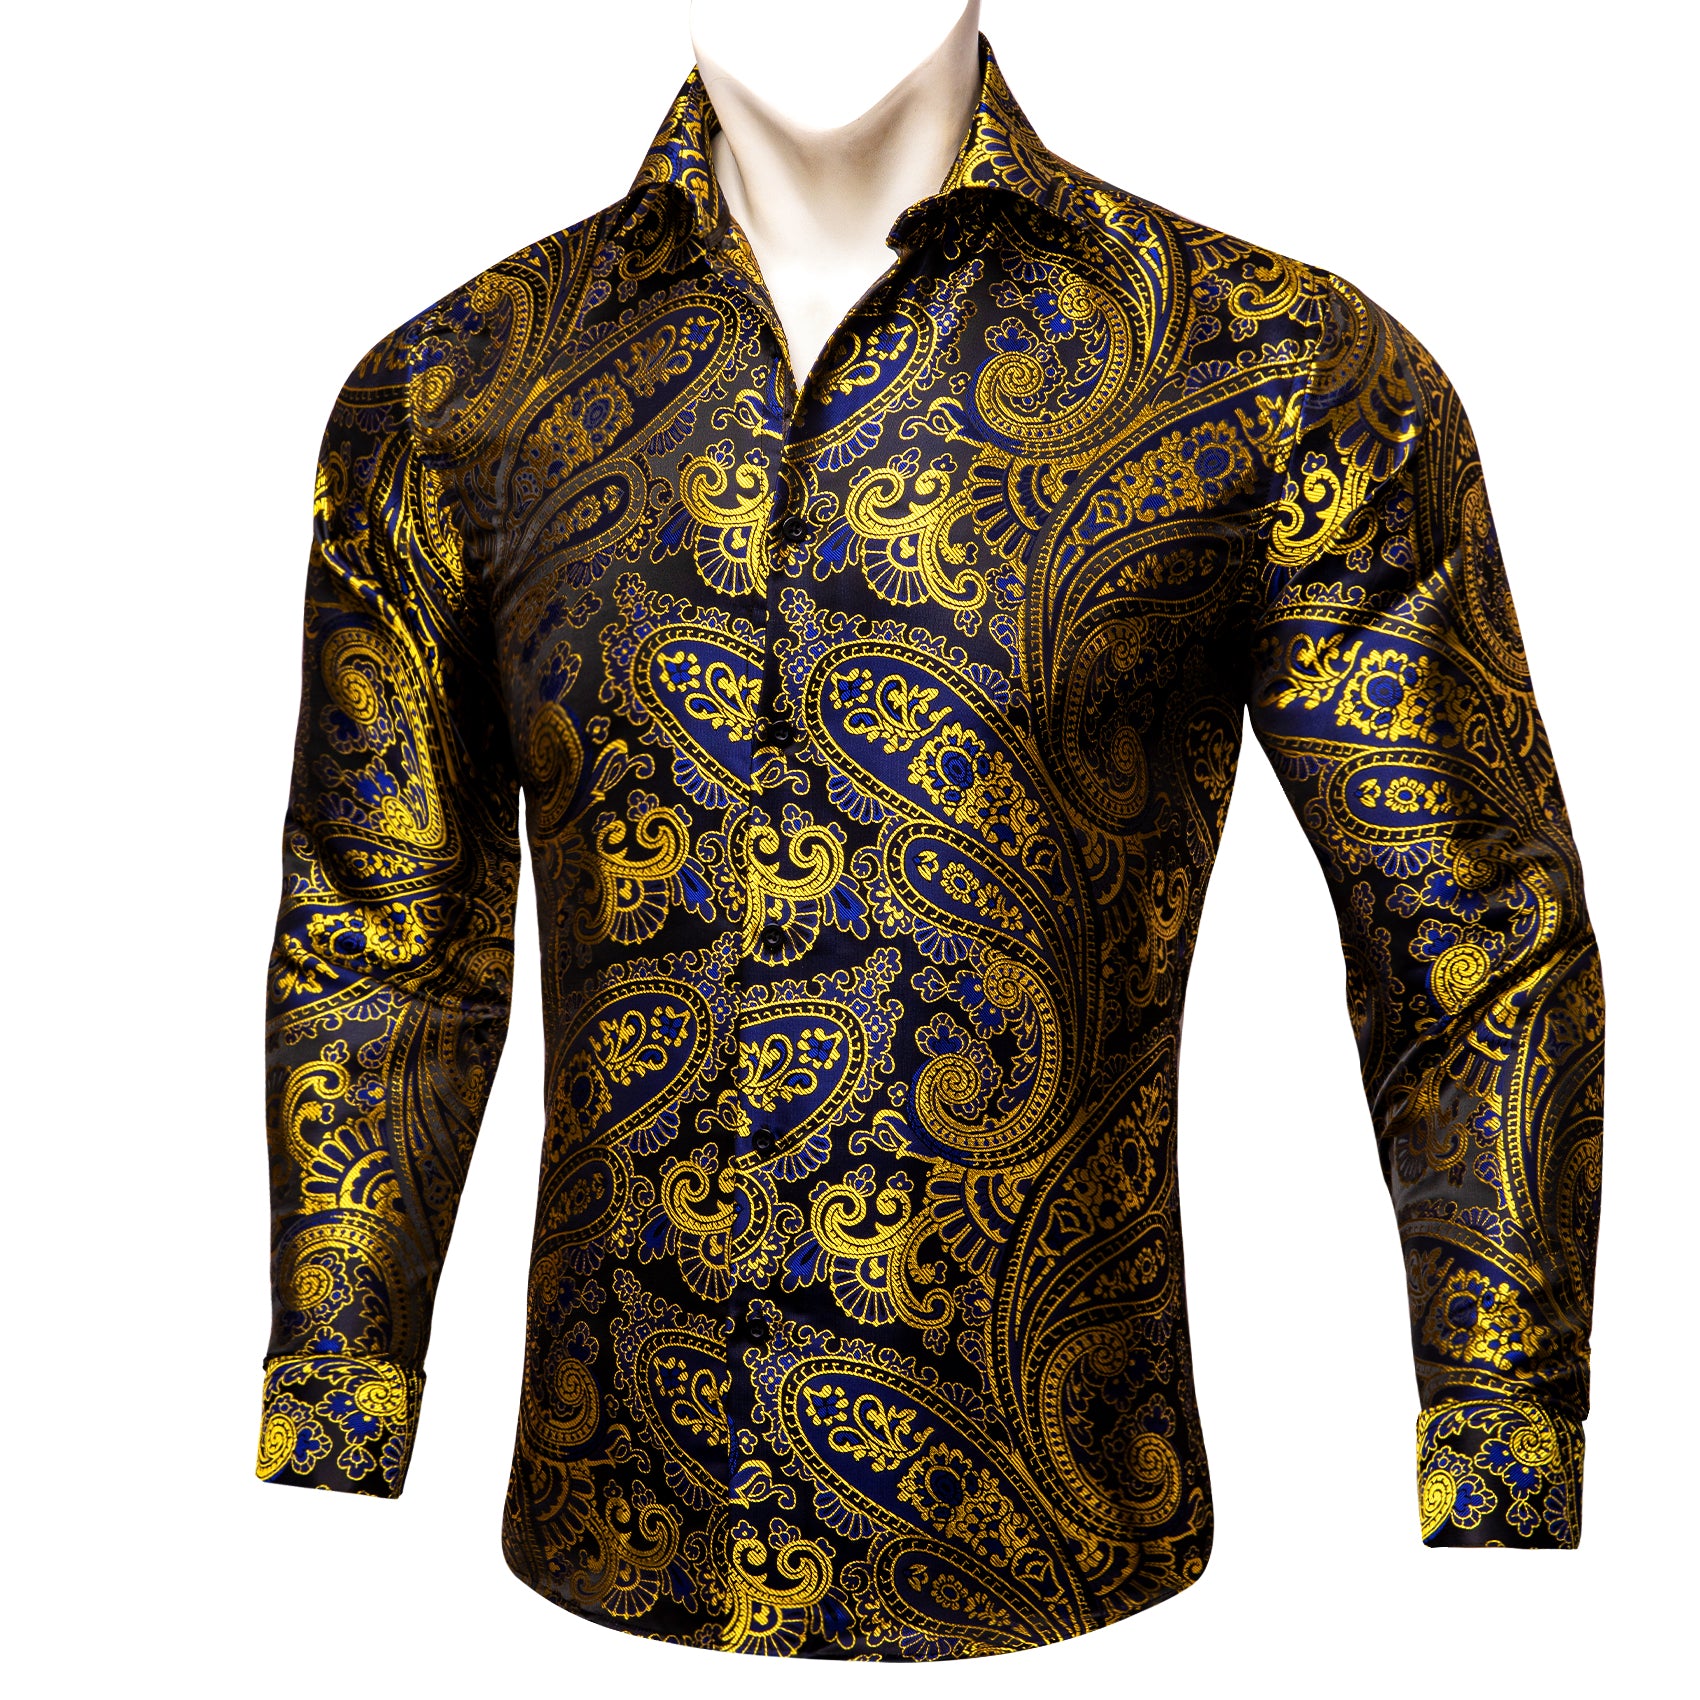 Black blue yellow golden long sleeve shirt for men dress shirt 